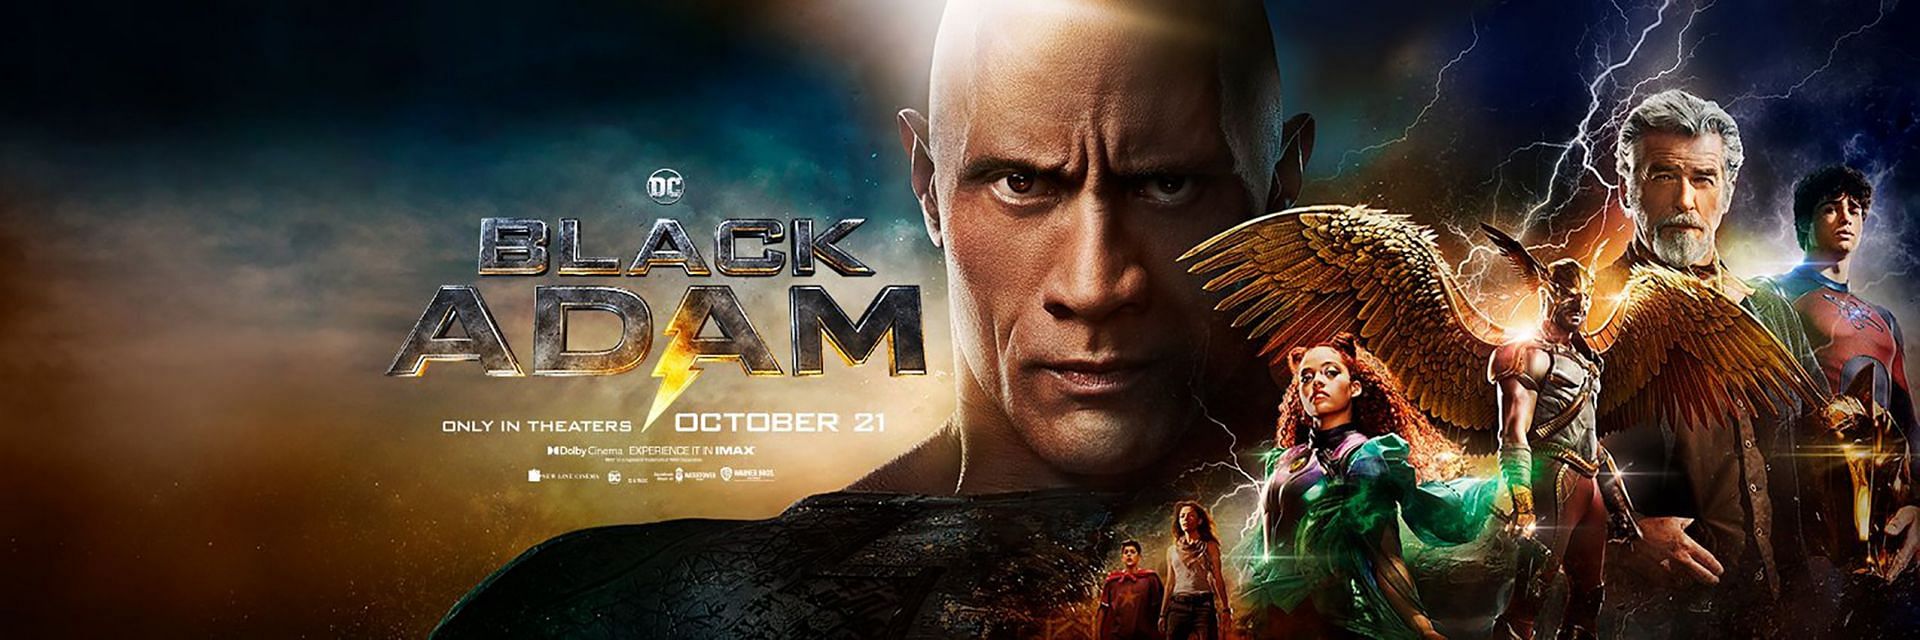 Black Adam (Image via DCEU)